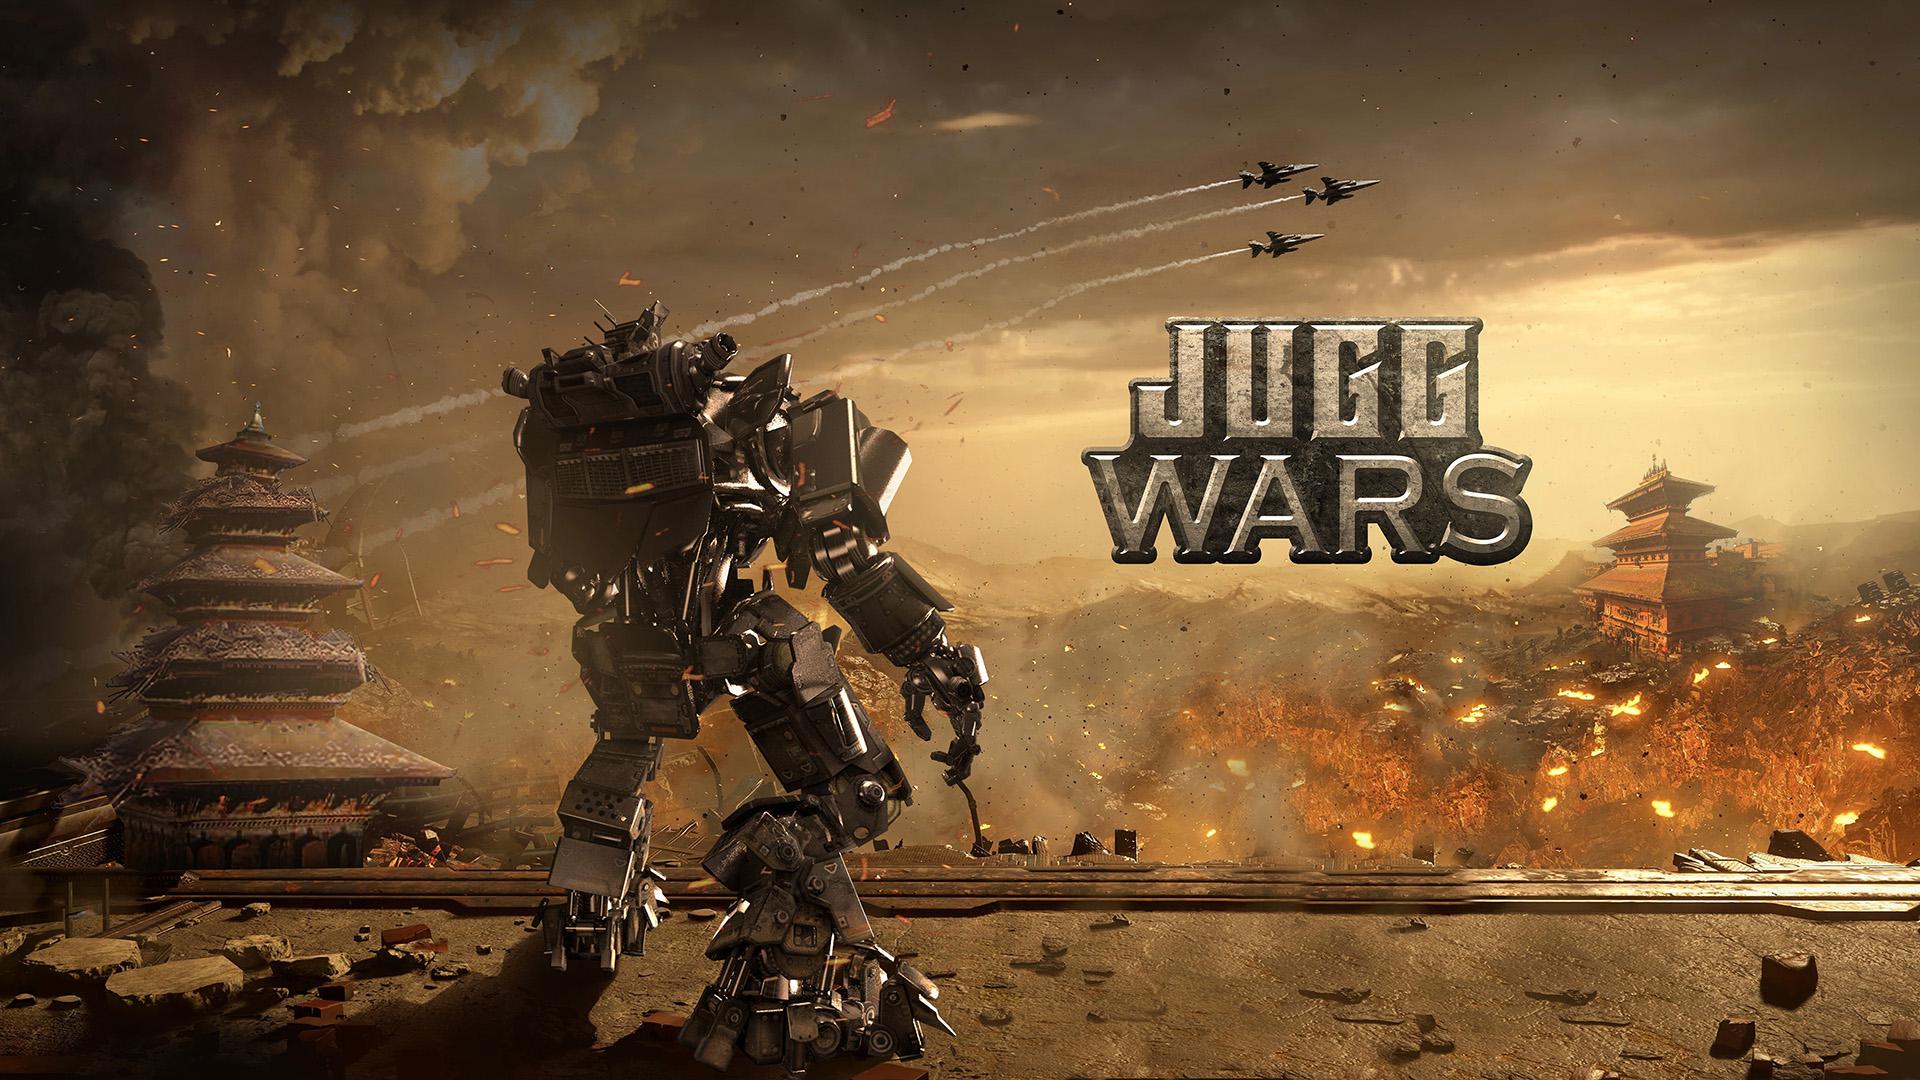 Jugg Wars安卓版 V1.0